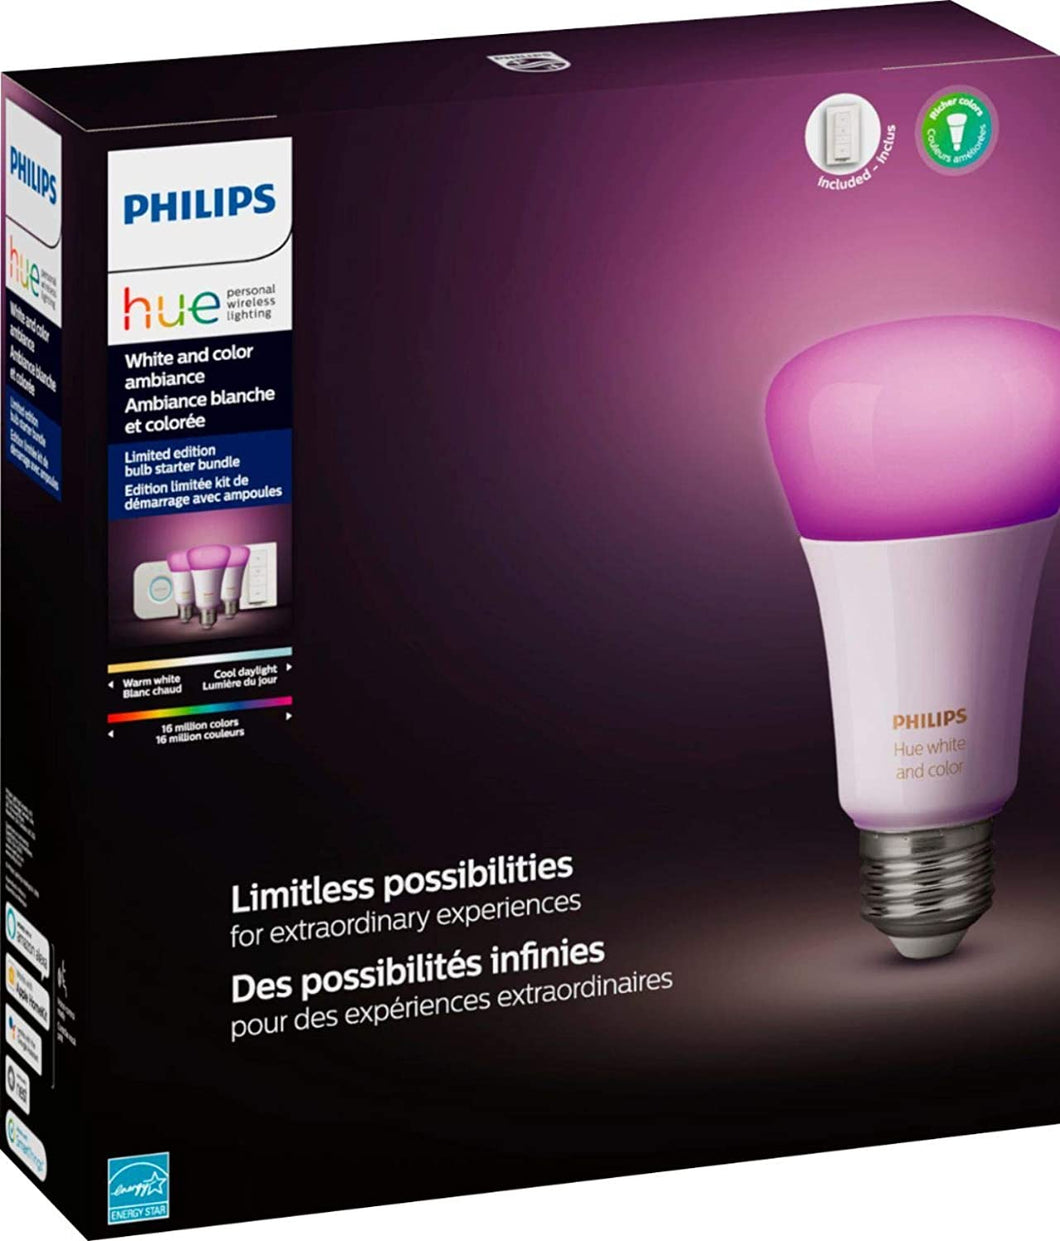 Philips Hue Phillips-HUE LED Lightbulbs 3-Bulb Starter Kit All Colrs in Rainbow & White 4 Pound